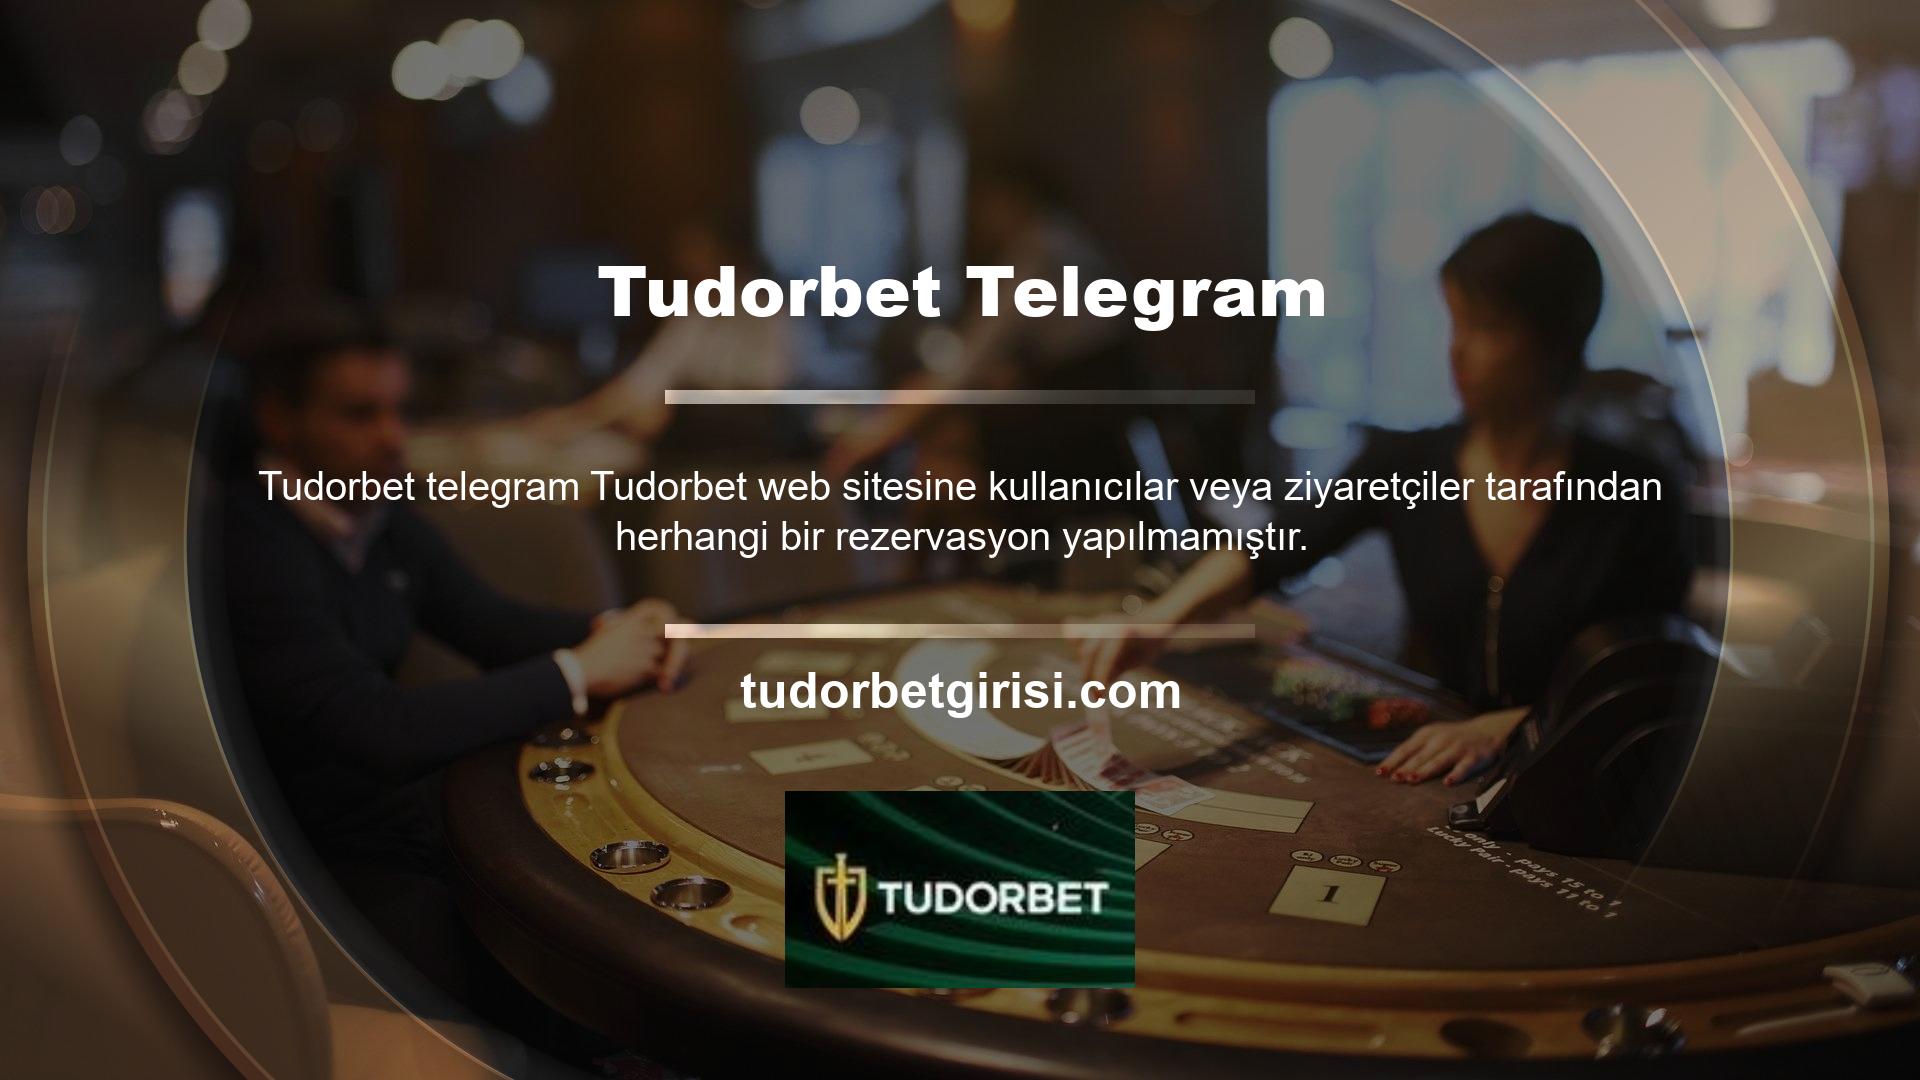 Tudorbet Telegramı hakkında bir yorumunuz var mı? Elbette herkes kişisel deneyimlerini, deneyimlerini ve beklentilerini bu web sitesindeki Telegram hesabına aktarabilir